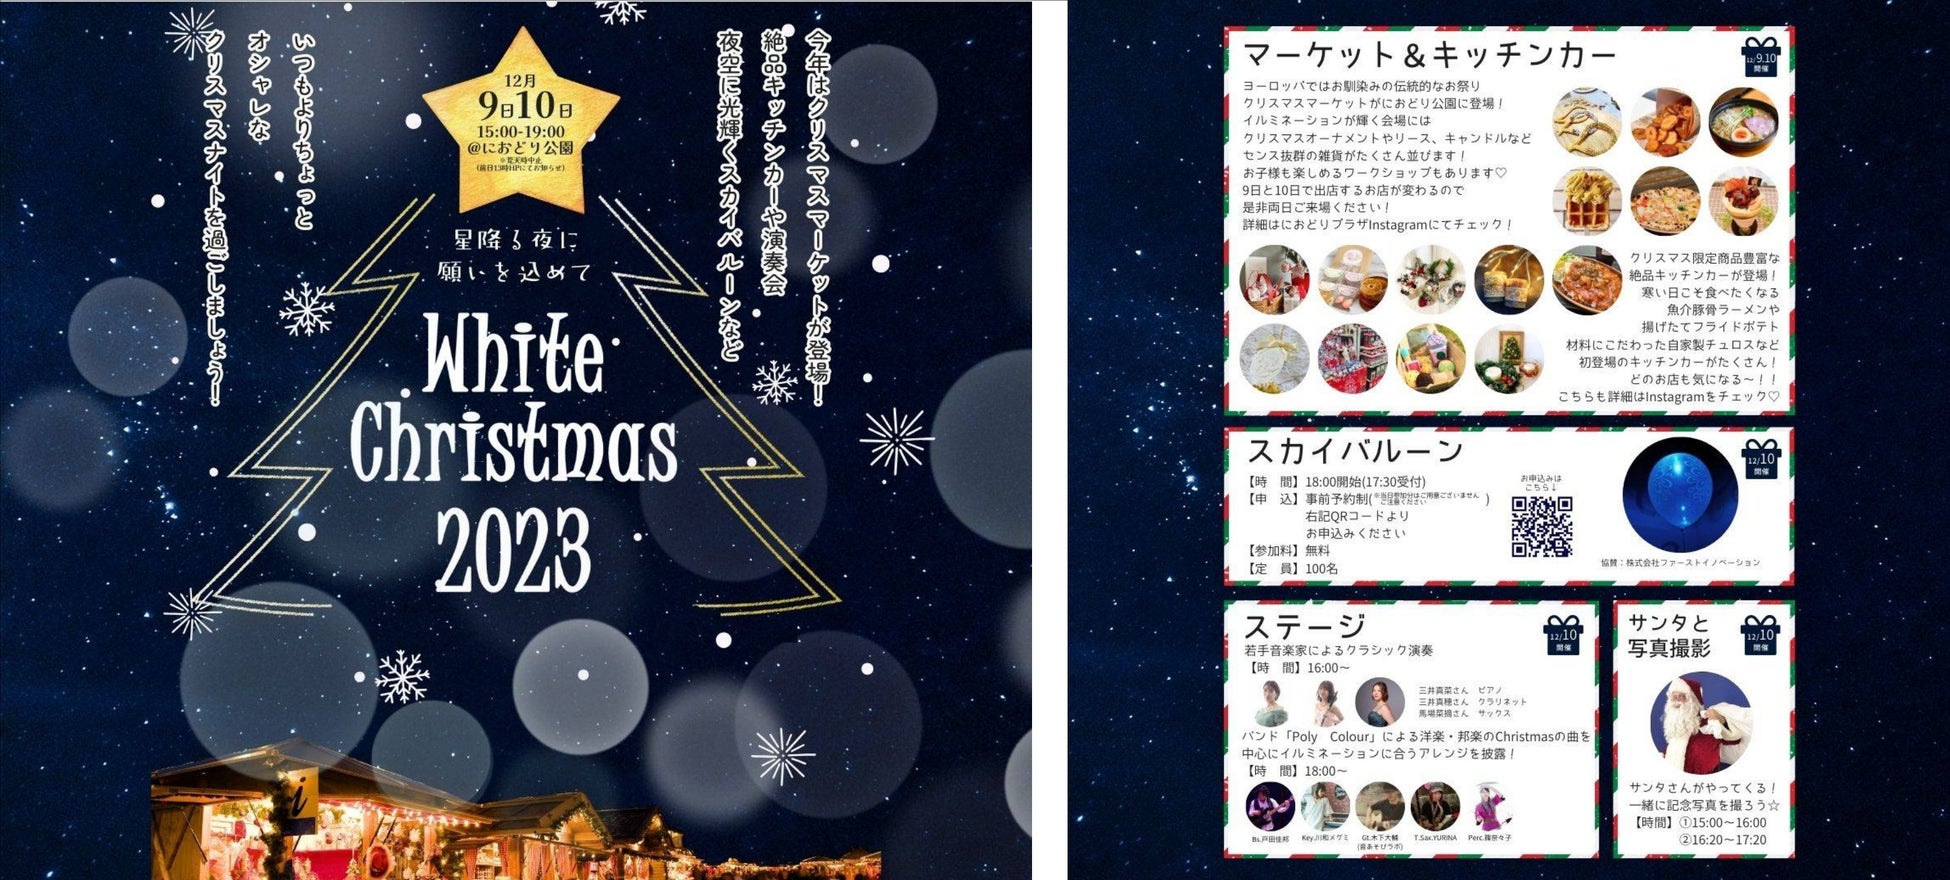 埼玉県三郷市で開催の「White Christmas 2023」のスカイバルーンイベントに協賛企業として参加いたしました！